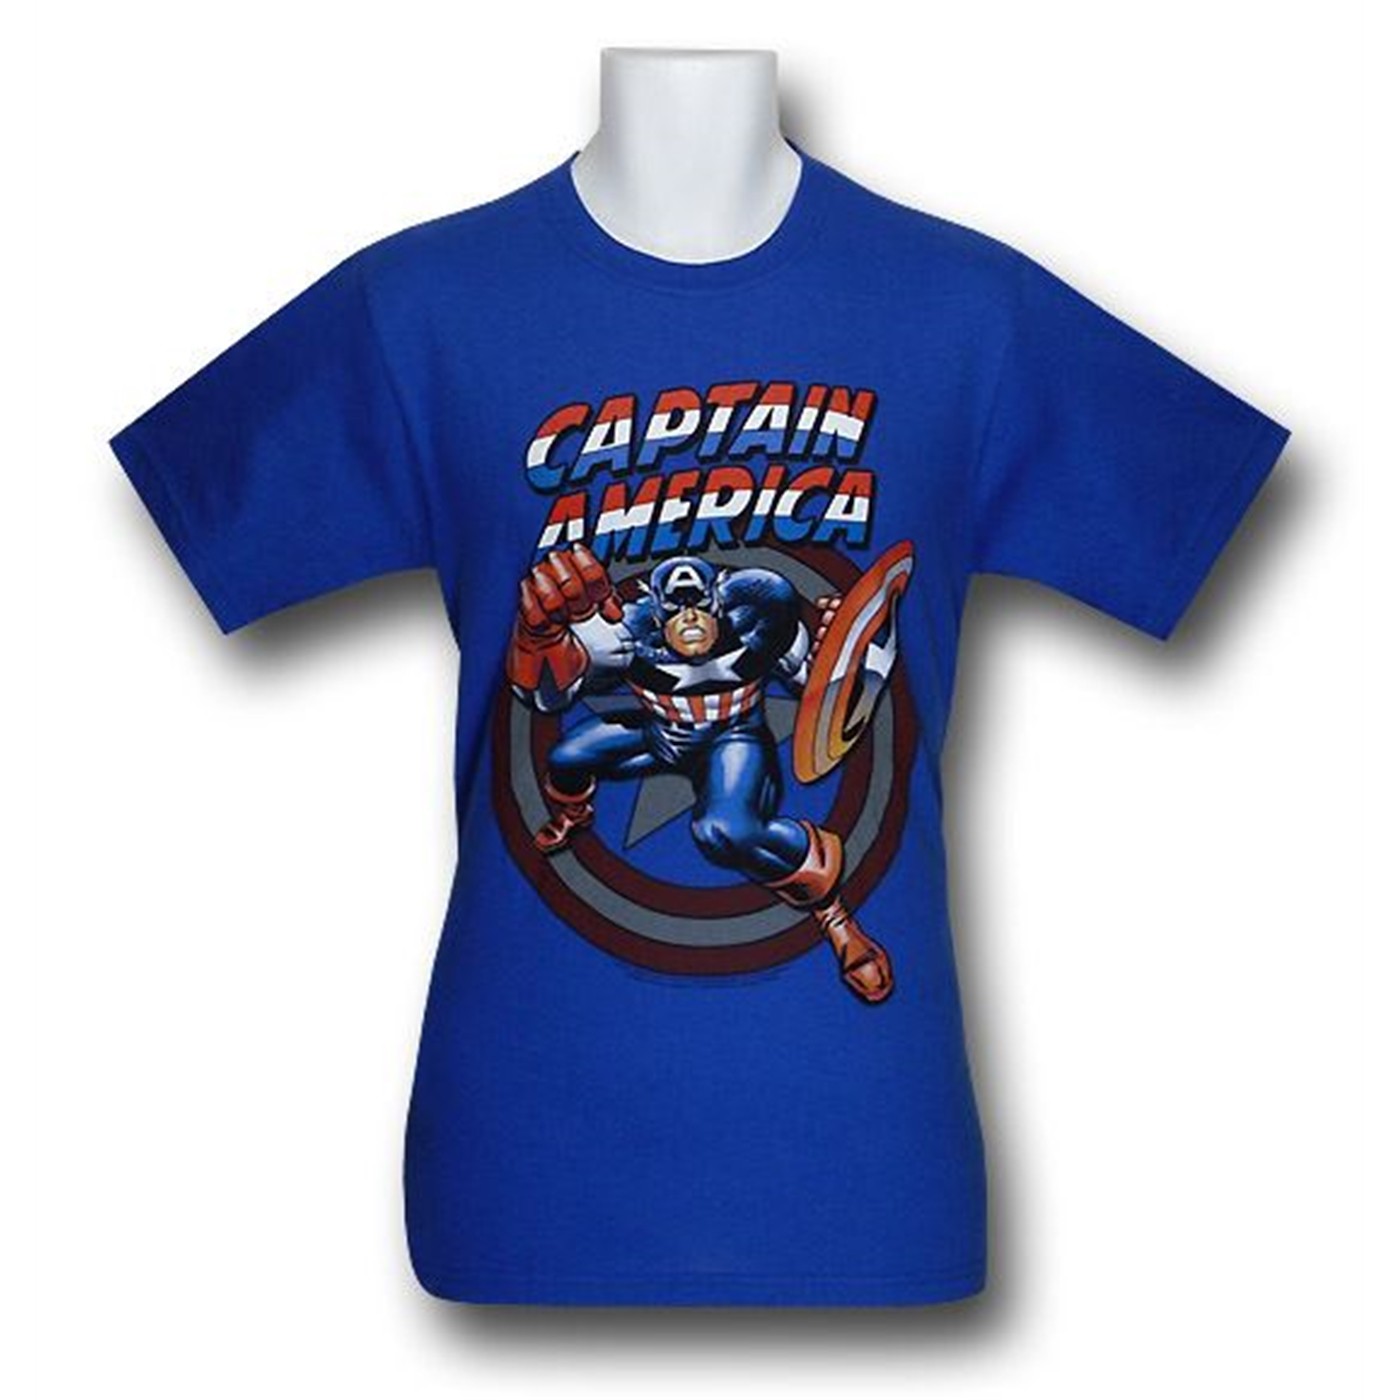 Captain America Kirby's 1st Avenger T-Shirt